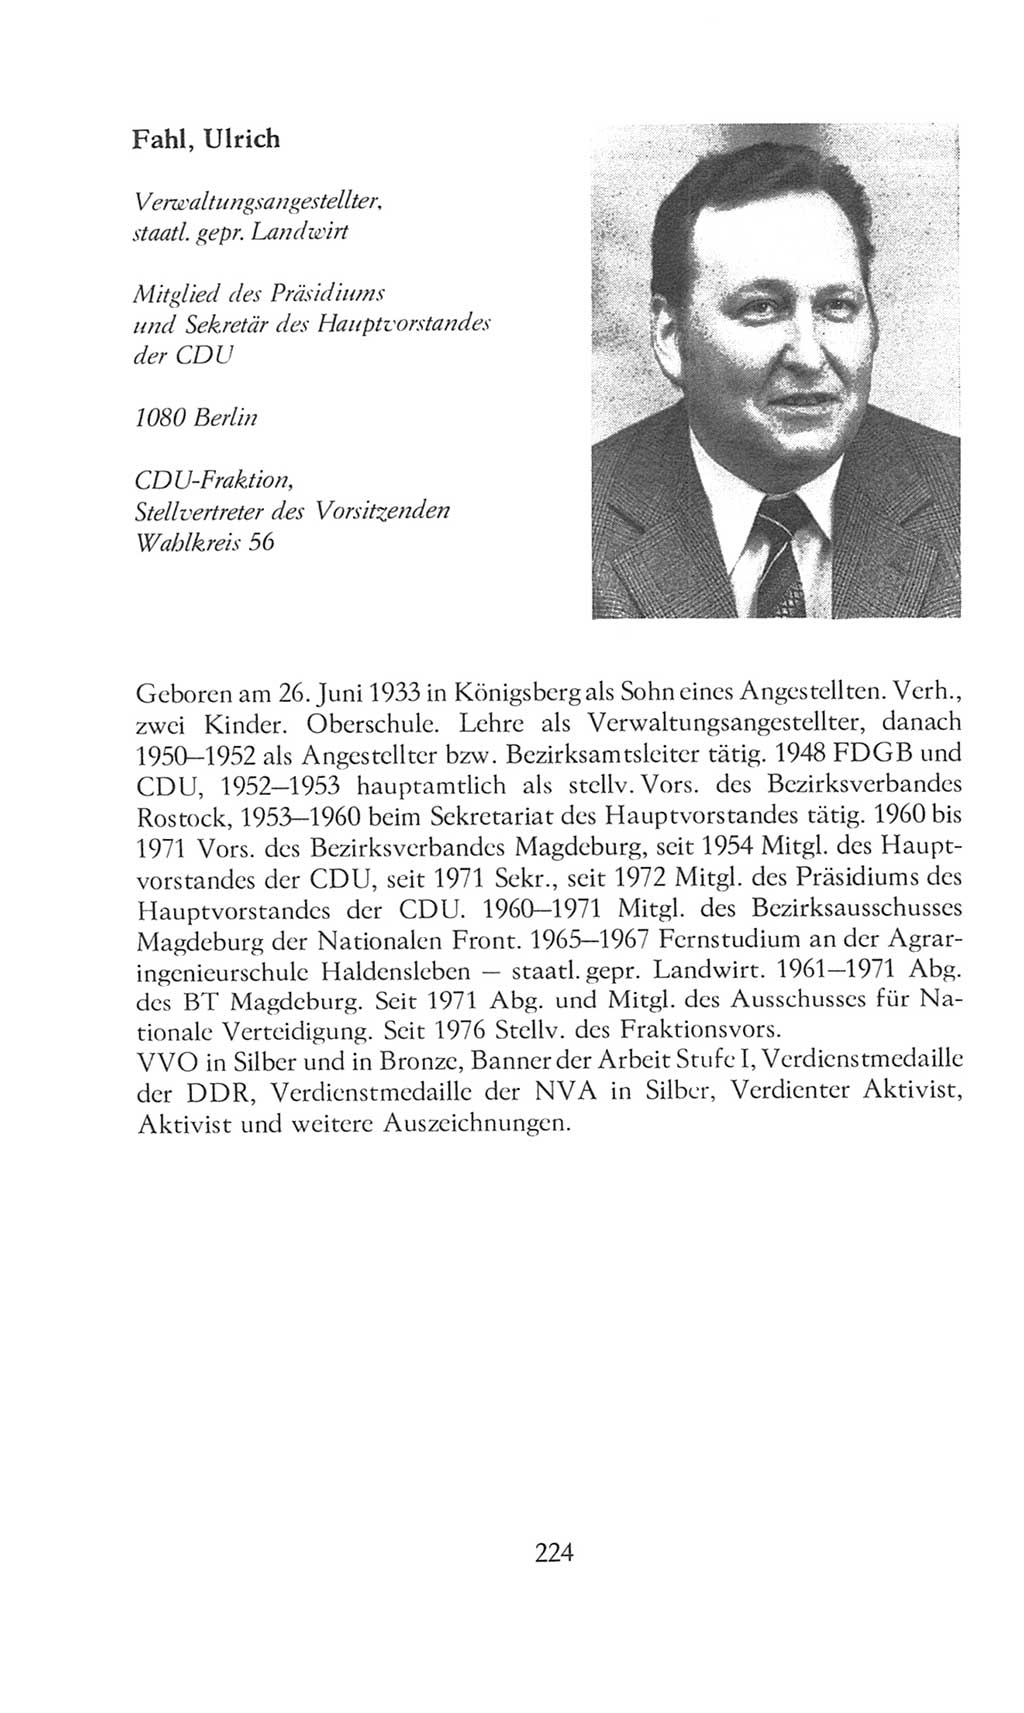 Volkskammer (VK) der Deutschen Demokratischen Republik (DDR), 8. Wahlperiode 1981-1986, Seite 224 (VK. DDR 8. WP. 1981-1986, S. 224)